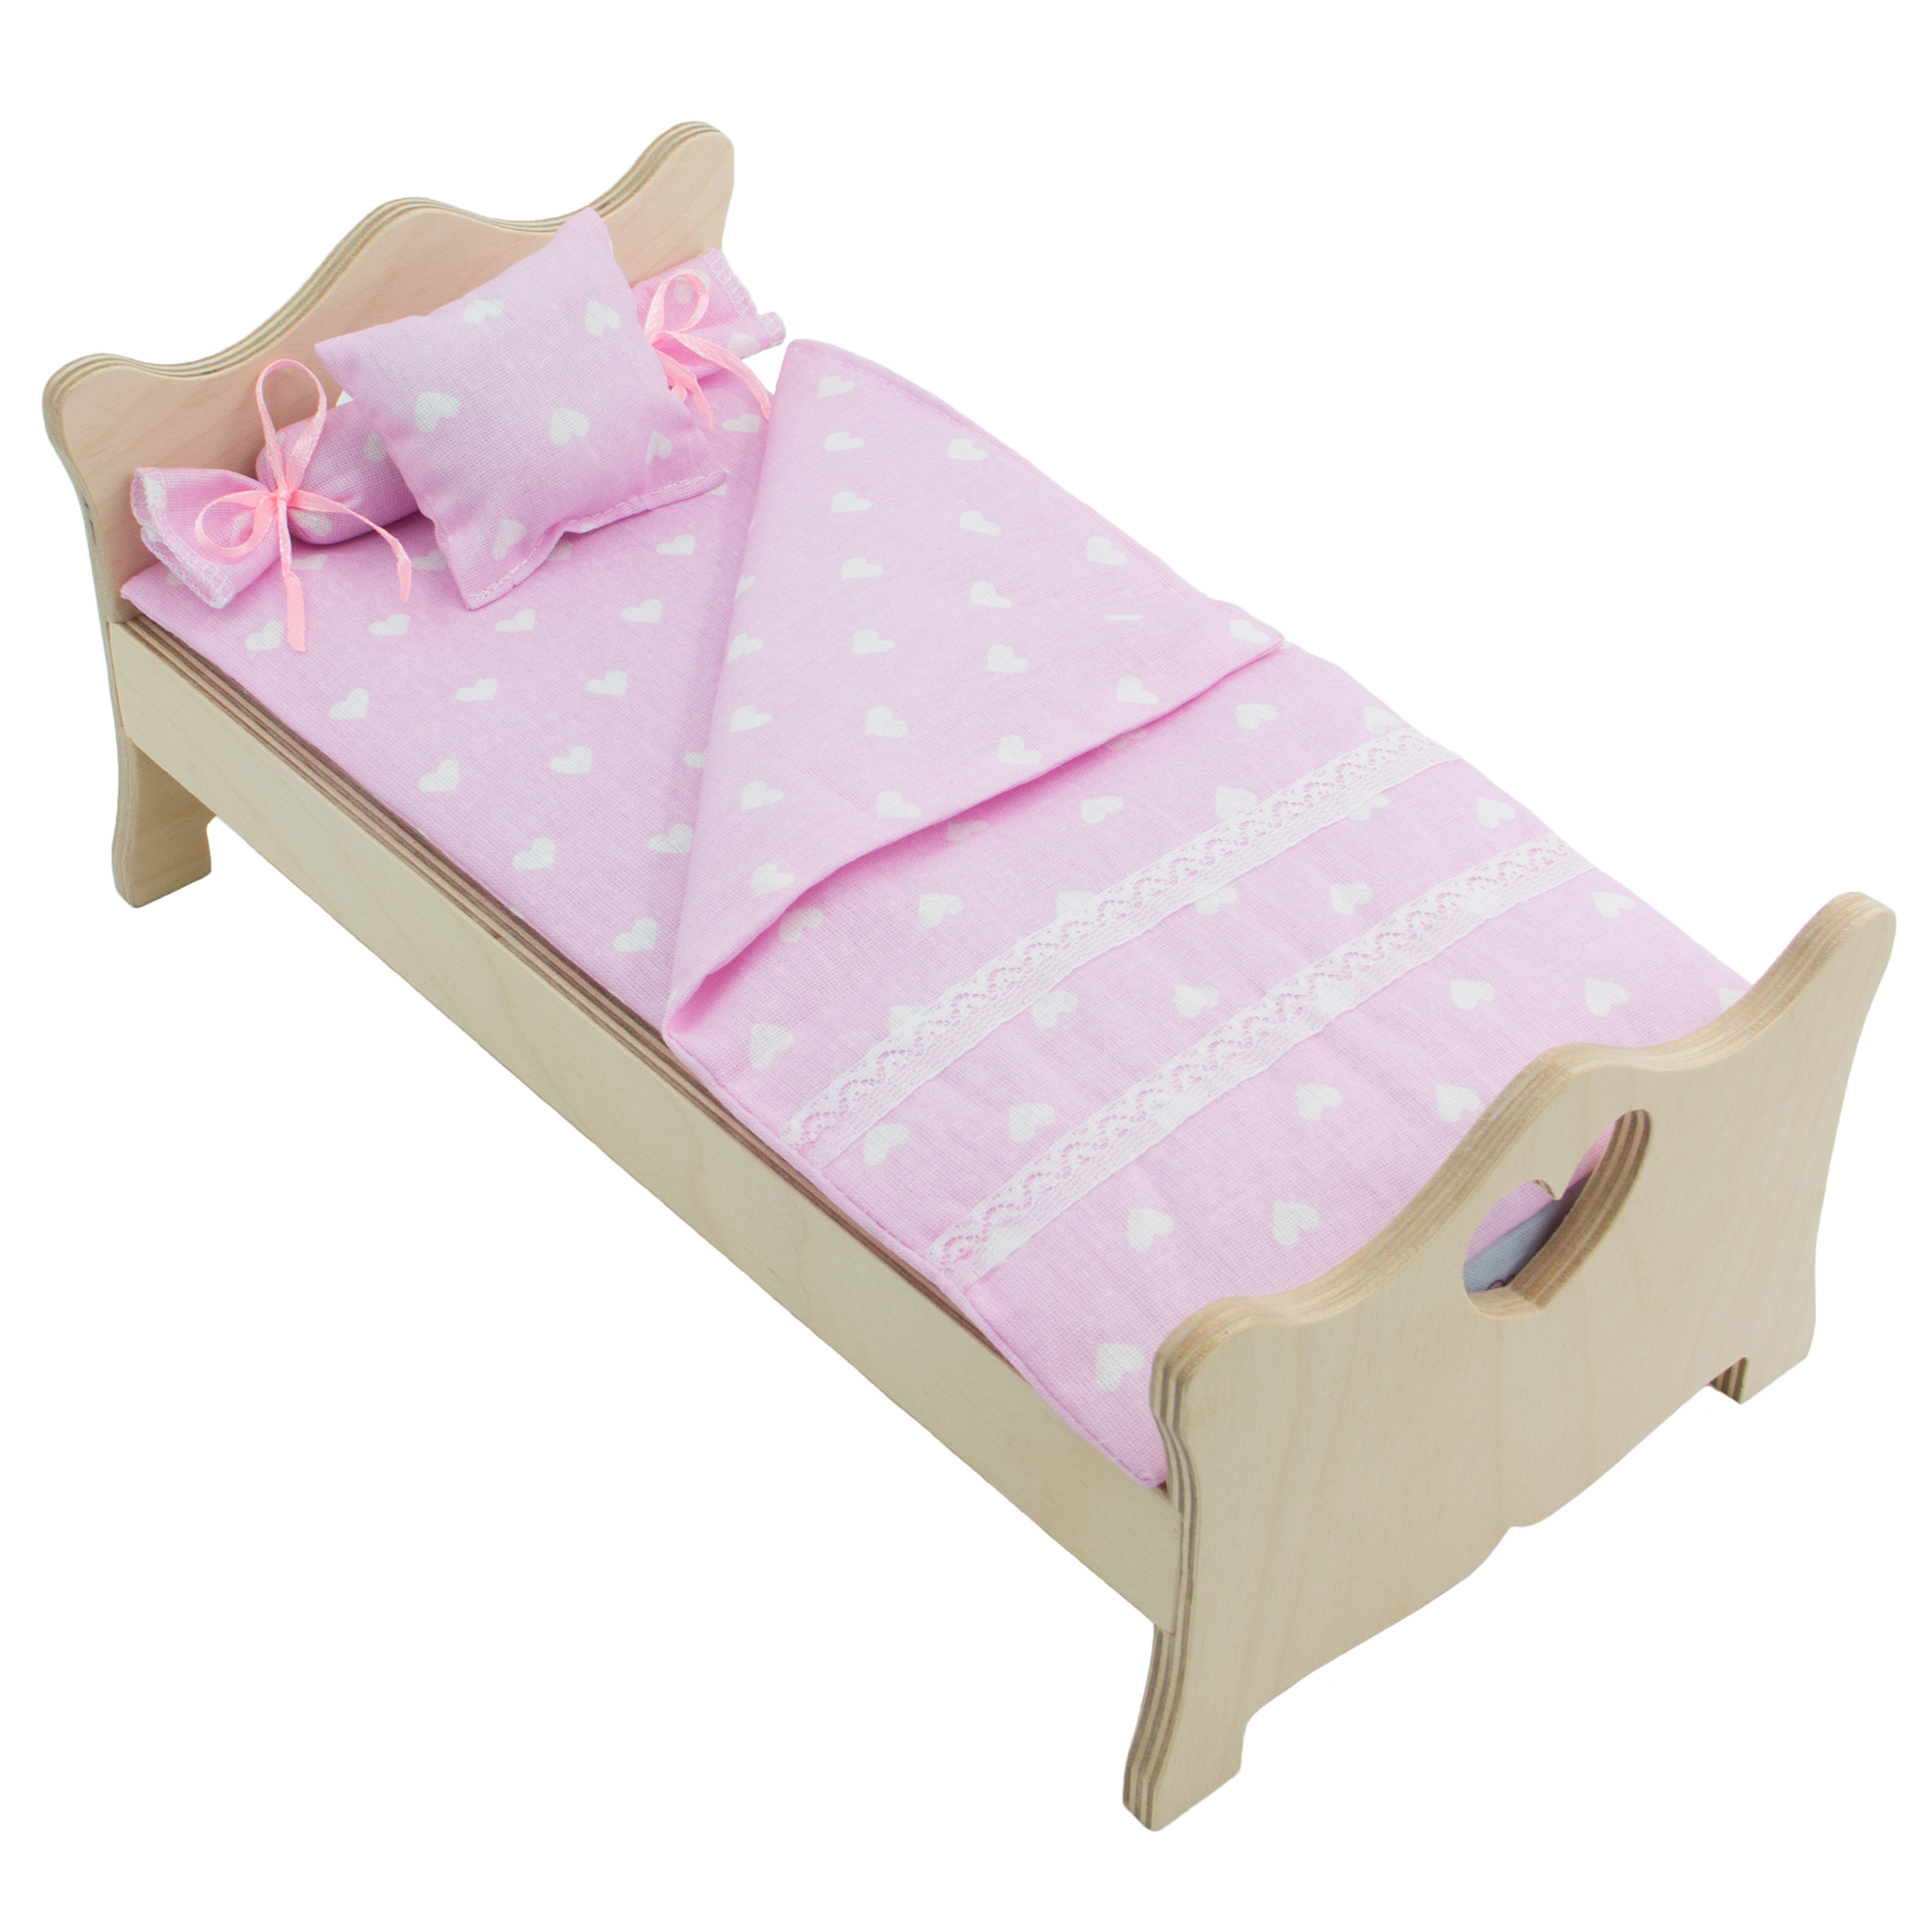 Комплект постельного белья Модница для куклы 29 см бледно-розовый 2002бледно-розовый - фото 4